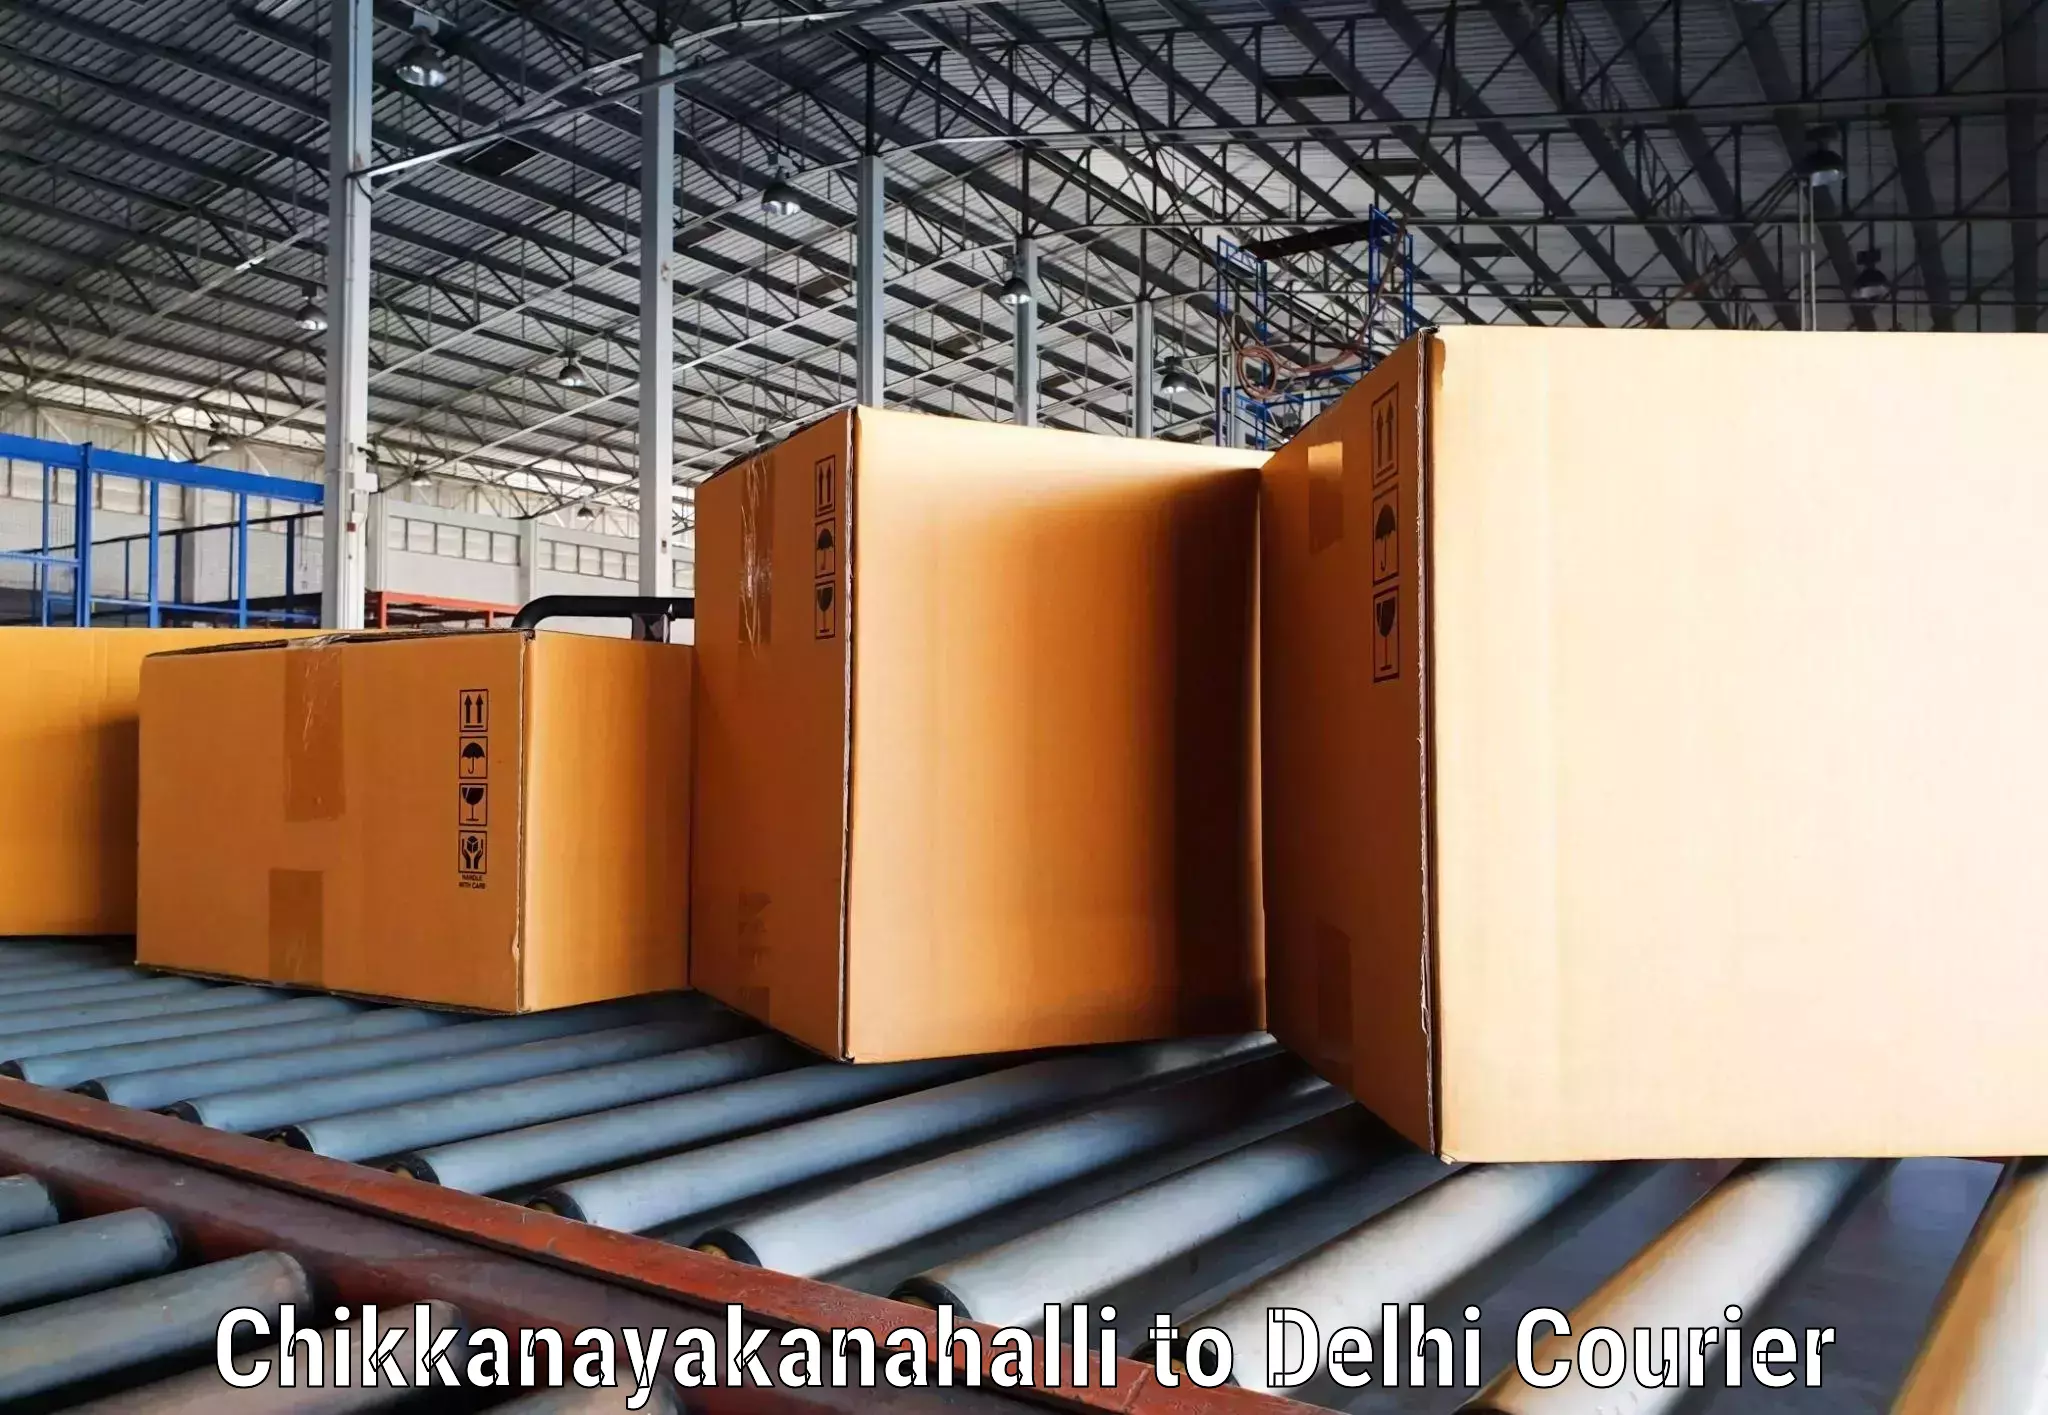 Premium courier solutions Chikkanayakanahalli to NIT Delhi